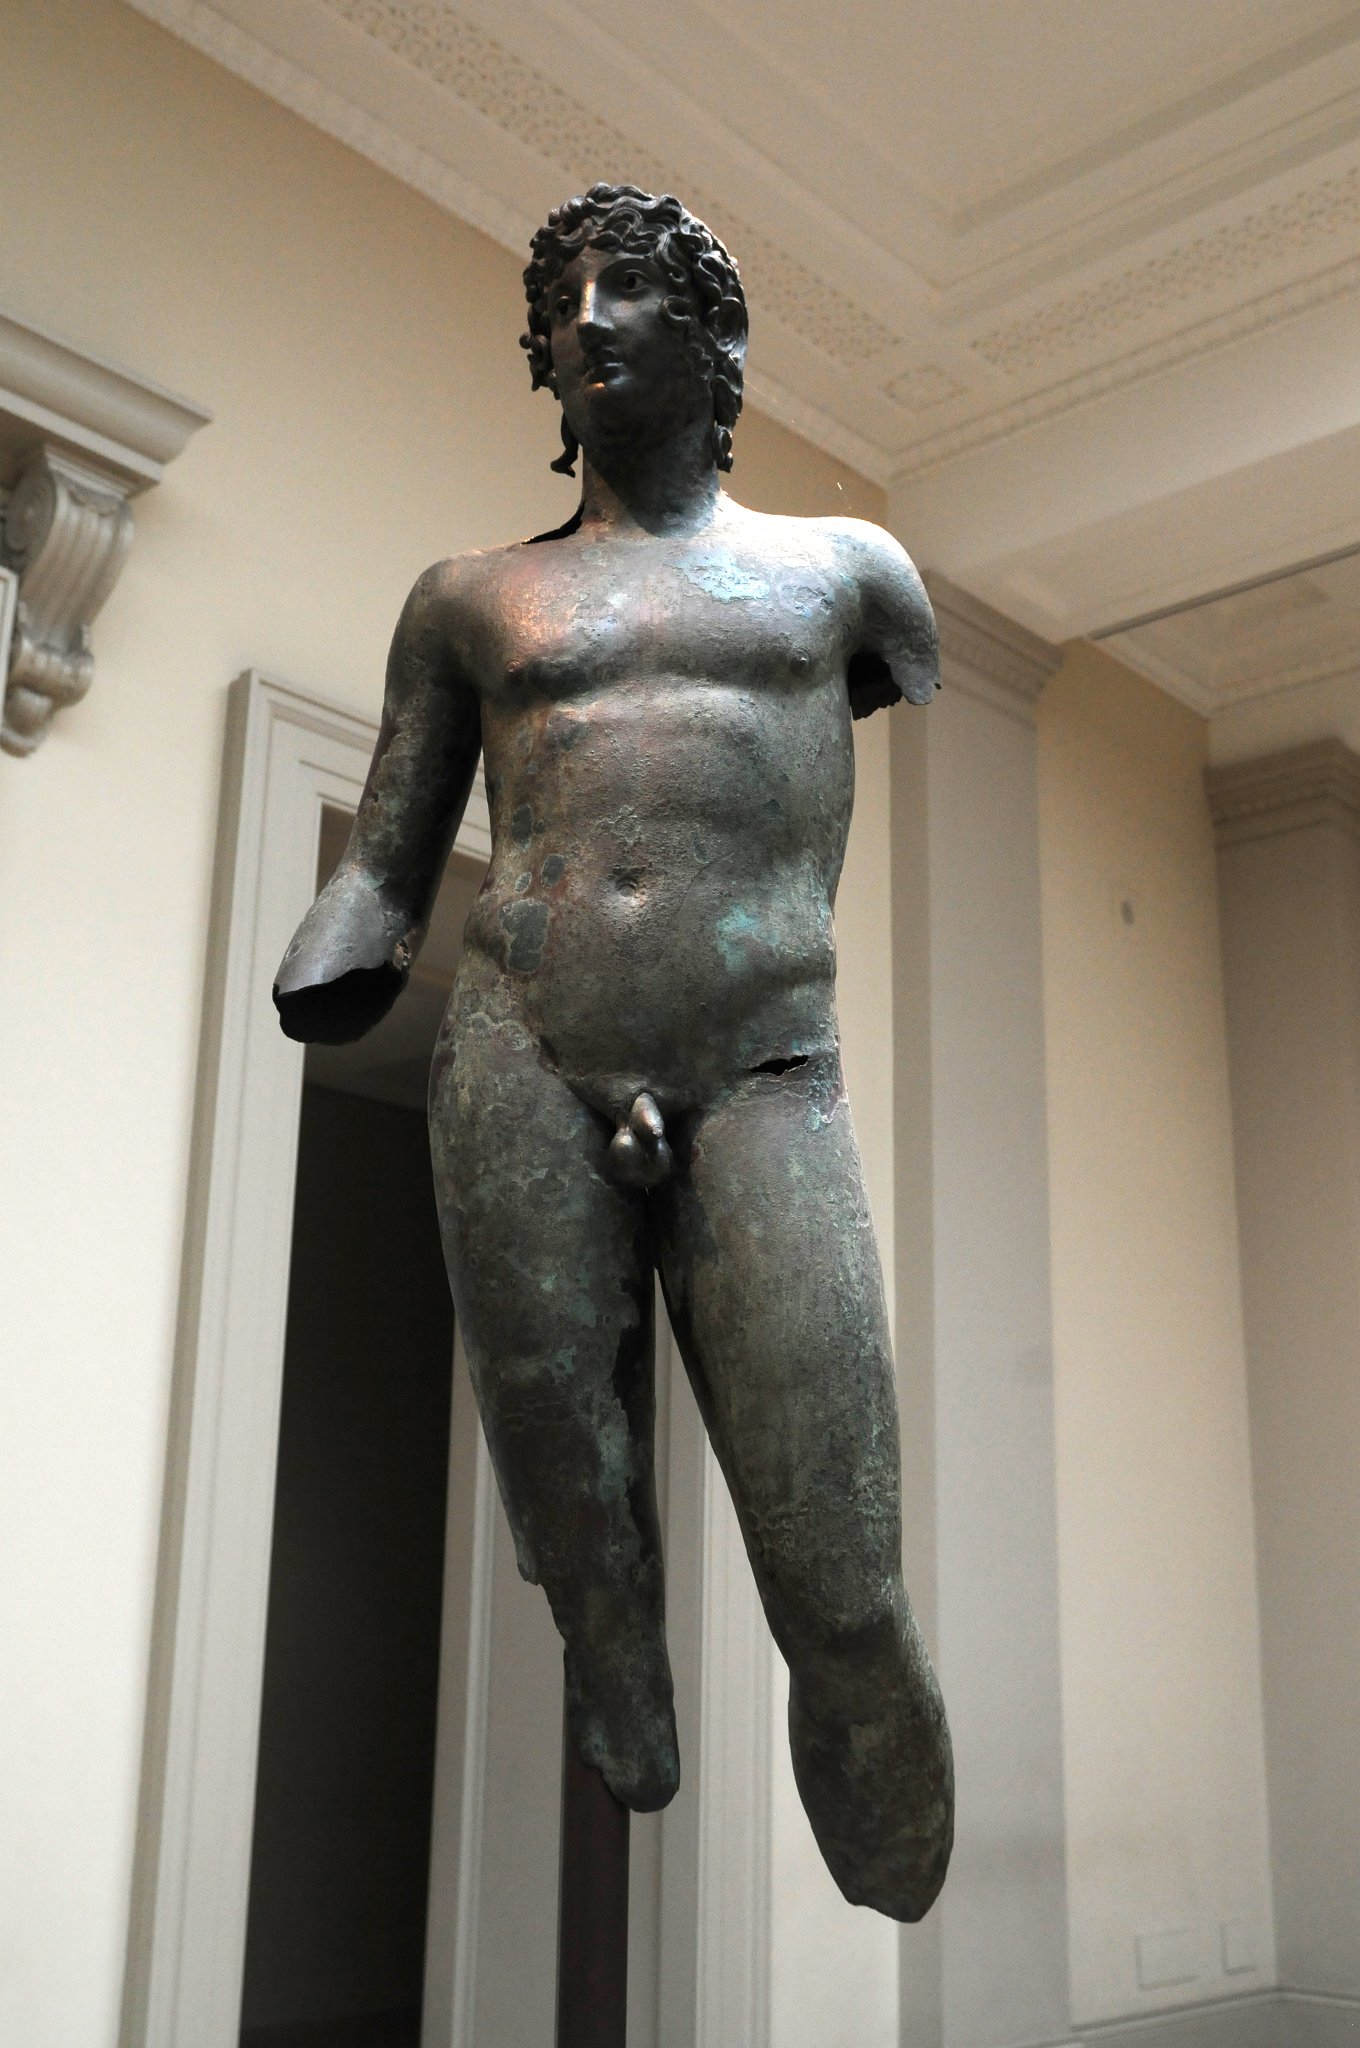 DSC_5778_2.jpg - Bronzová socha mladého muže. Ve starověkém Řecku a Římě, bronzové a mramorové sochy zdobí veřejná prostranství a svatyně bohů. V průběhu staletí byly téměř všechny bronzové sochy roztaveny pro opakované použití. Toto je jedna z mála dochovaných příkladů nalezených v Egyptě.